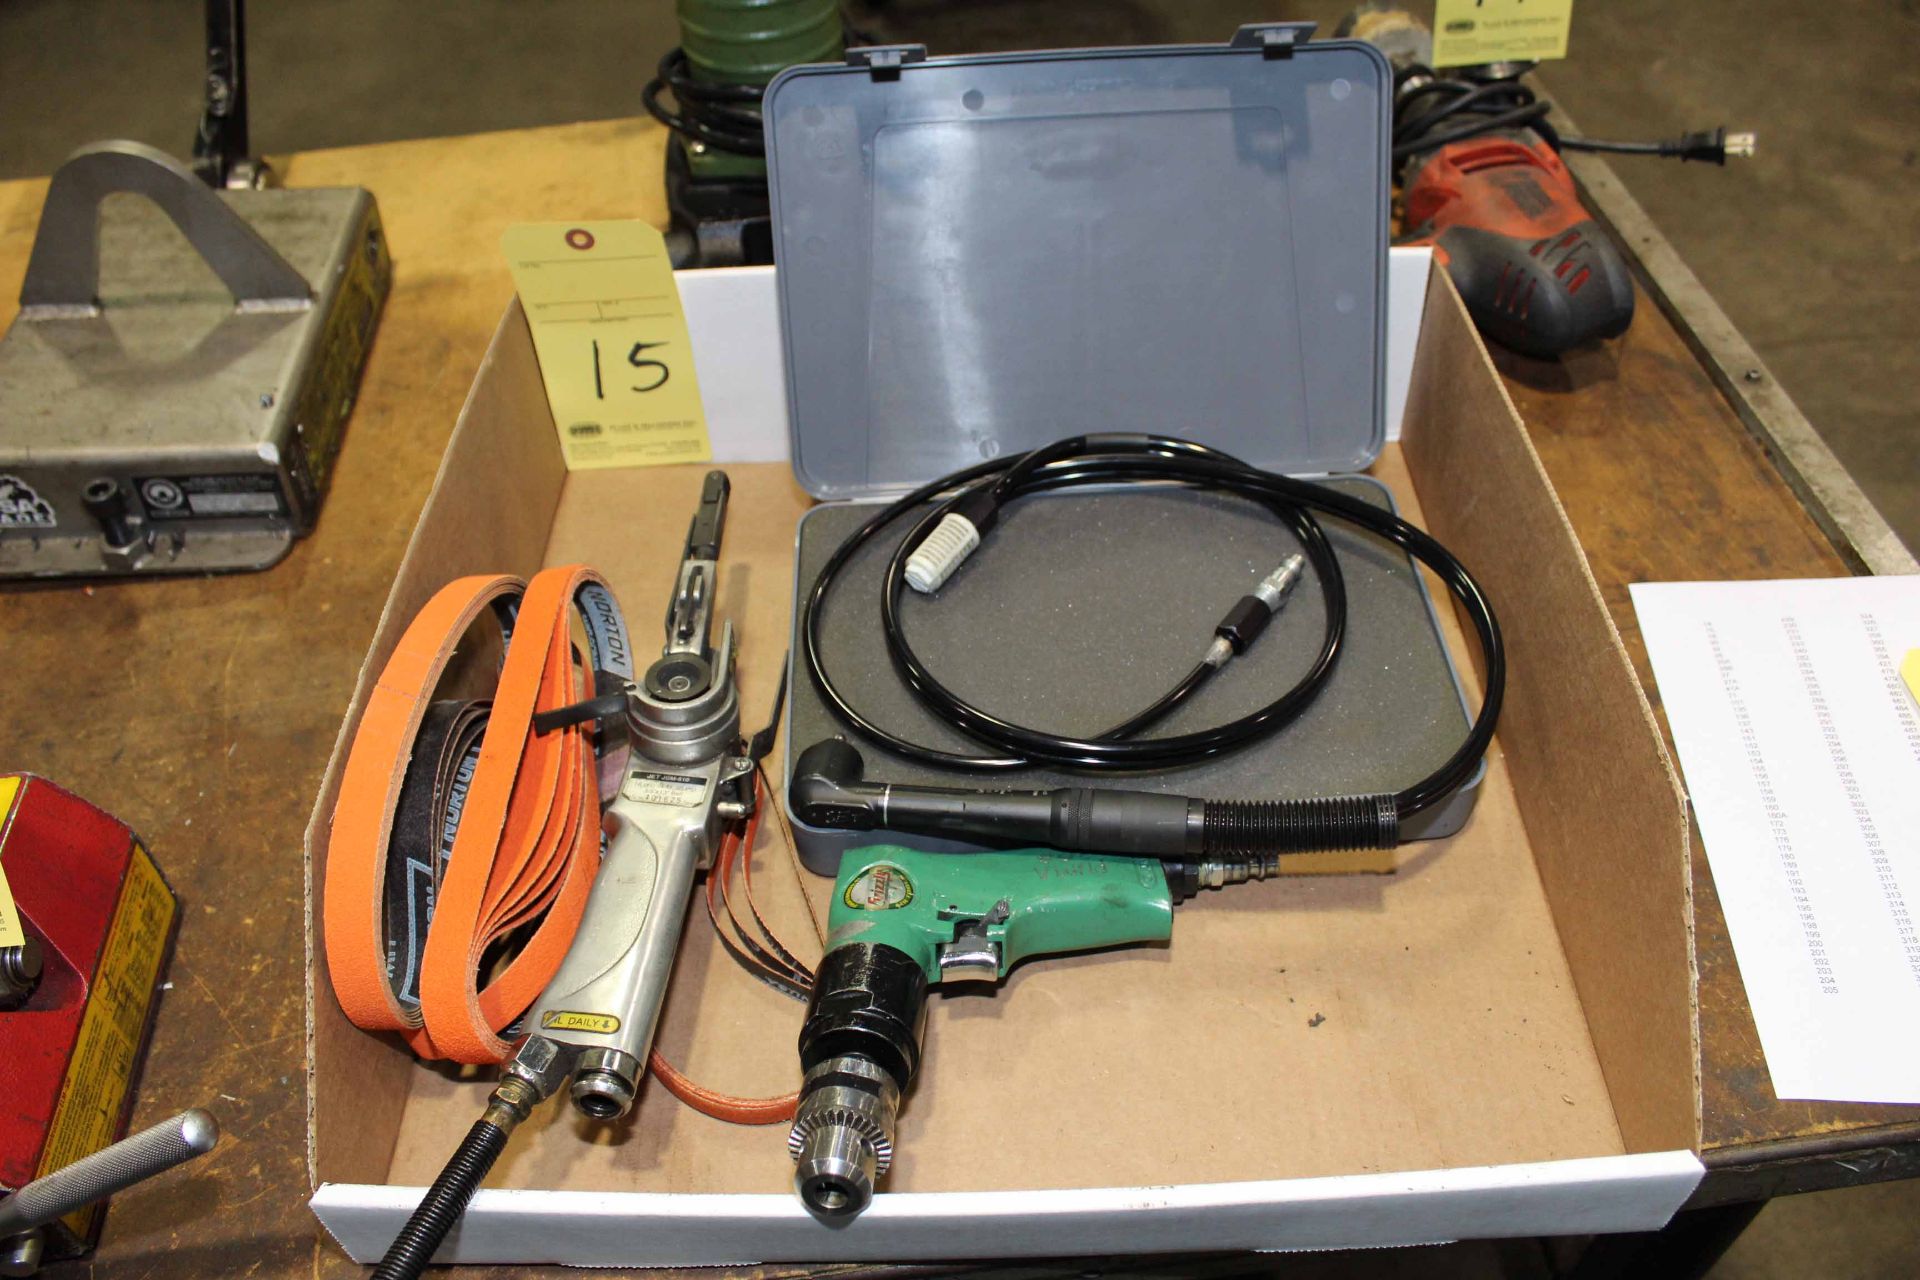 LOT CONSISTING OF: pneu. tools, drills, belt sander, deburrer